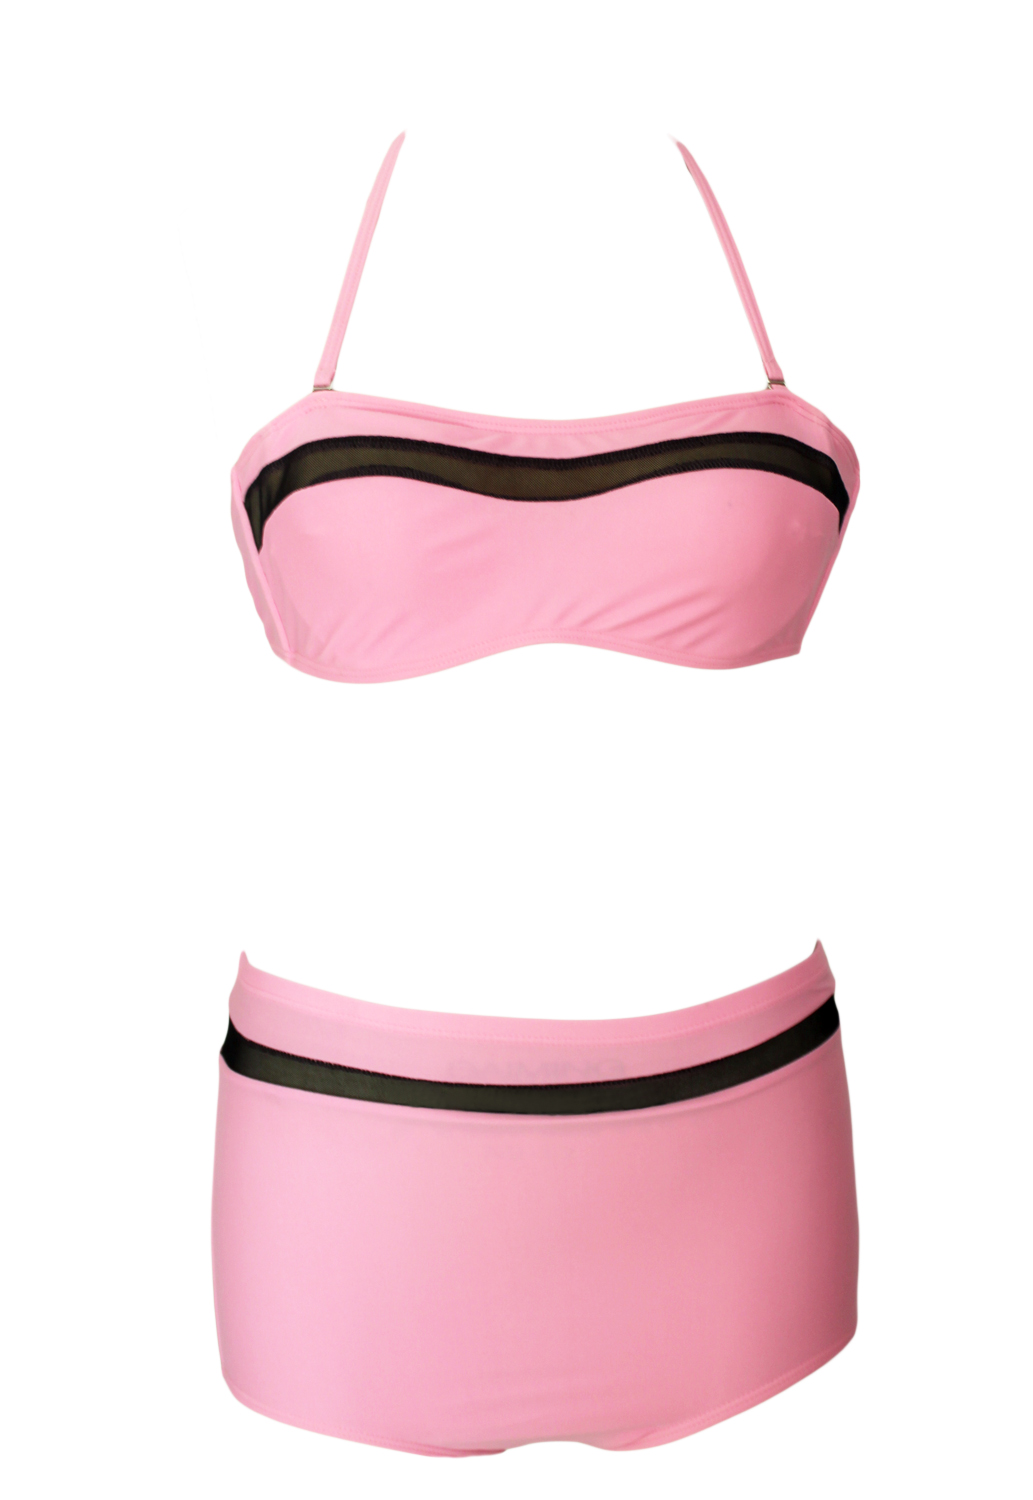 Sexy Woman Solid Pink Bikinis_Bikinis_Swimwear_LovelyWholesale ...